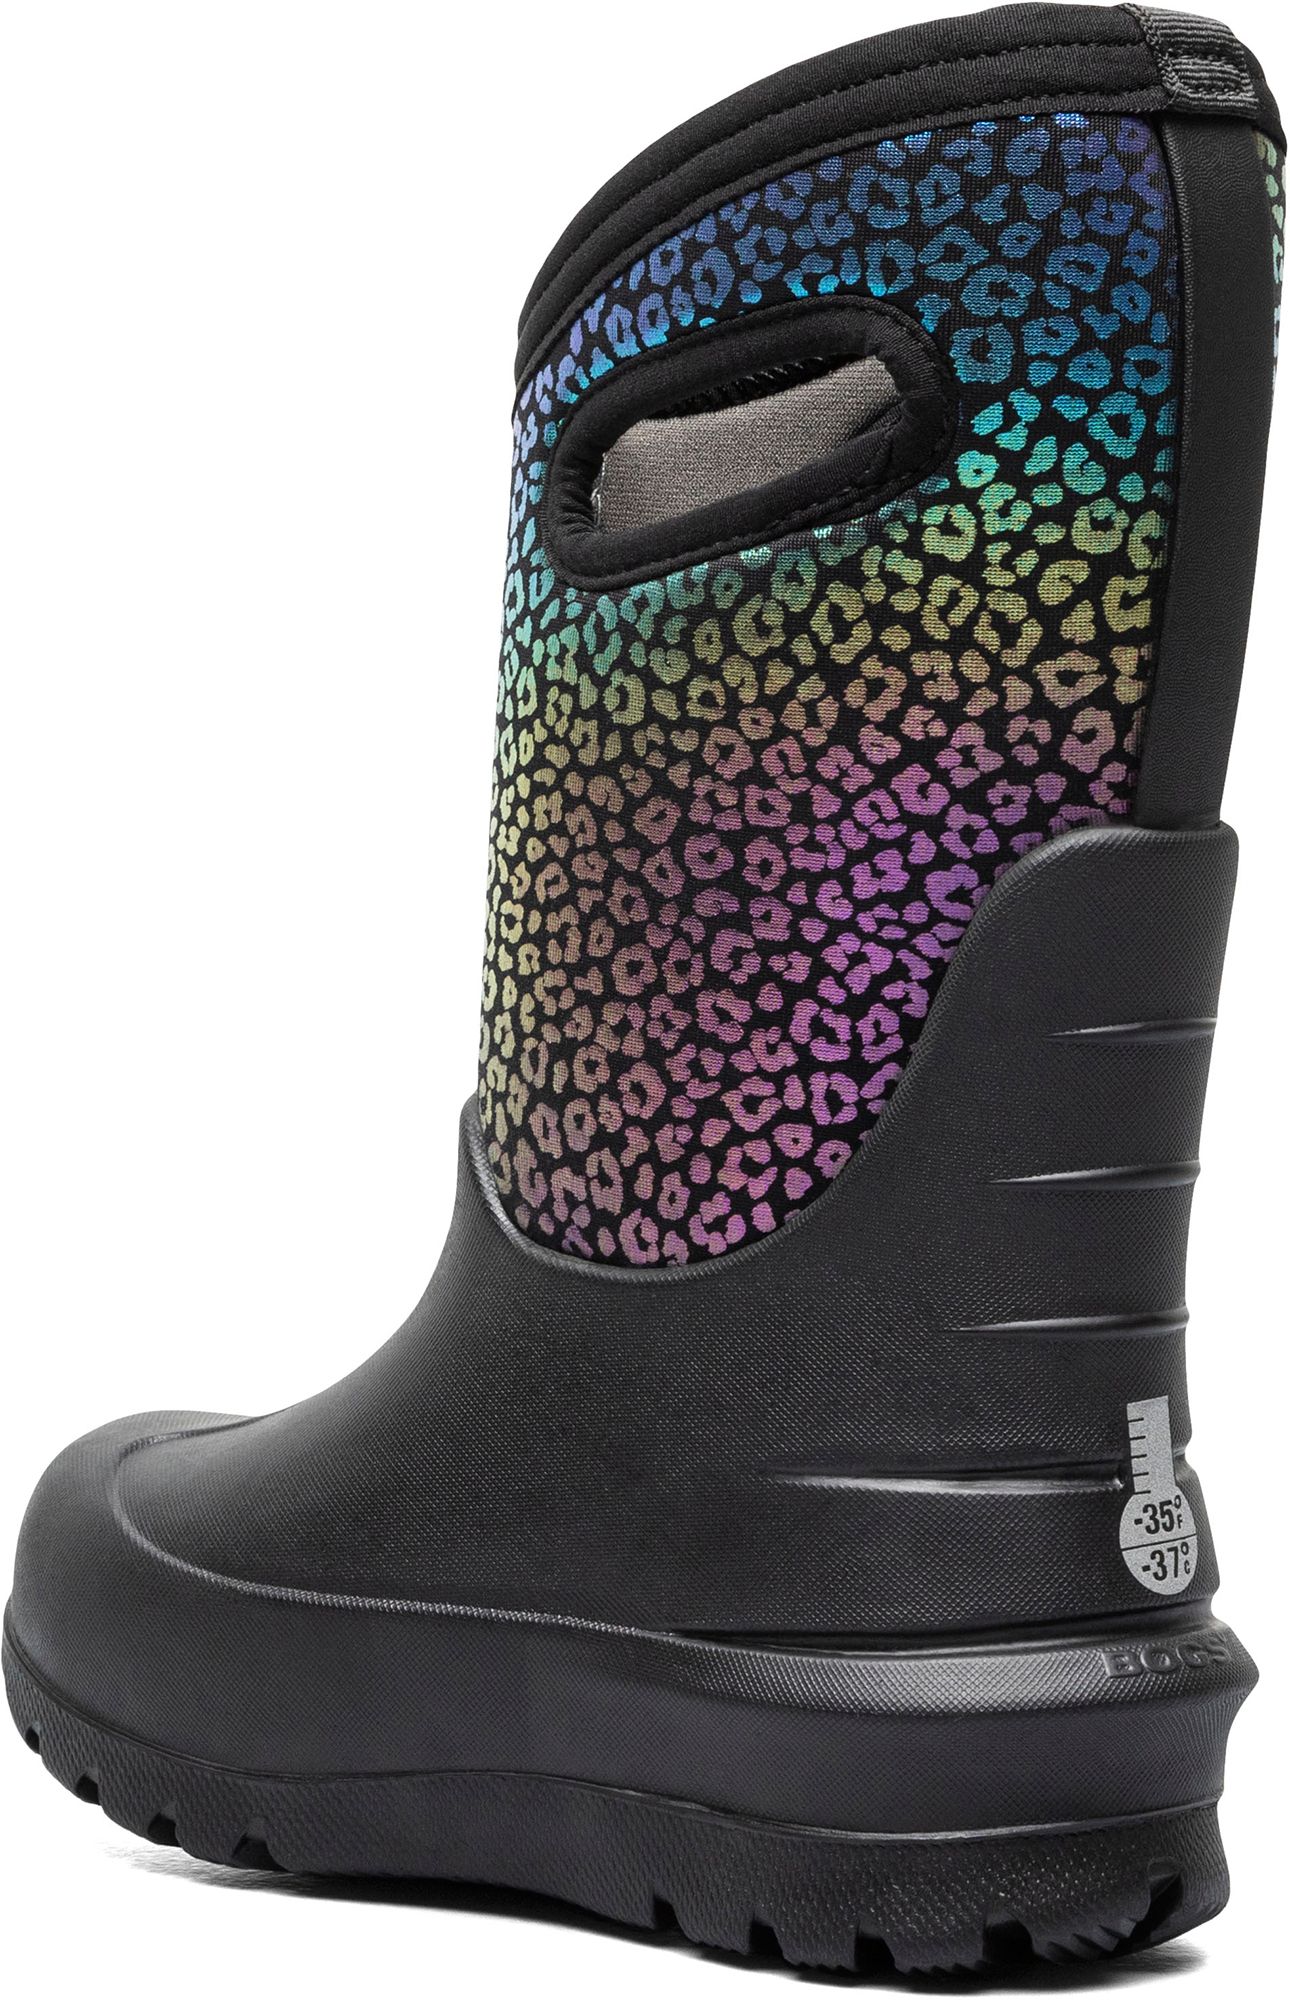 Bogs Kids' Neo Classic Rainbow Leopard Waterproof Winter Boots